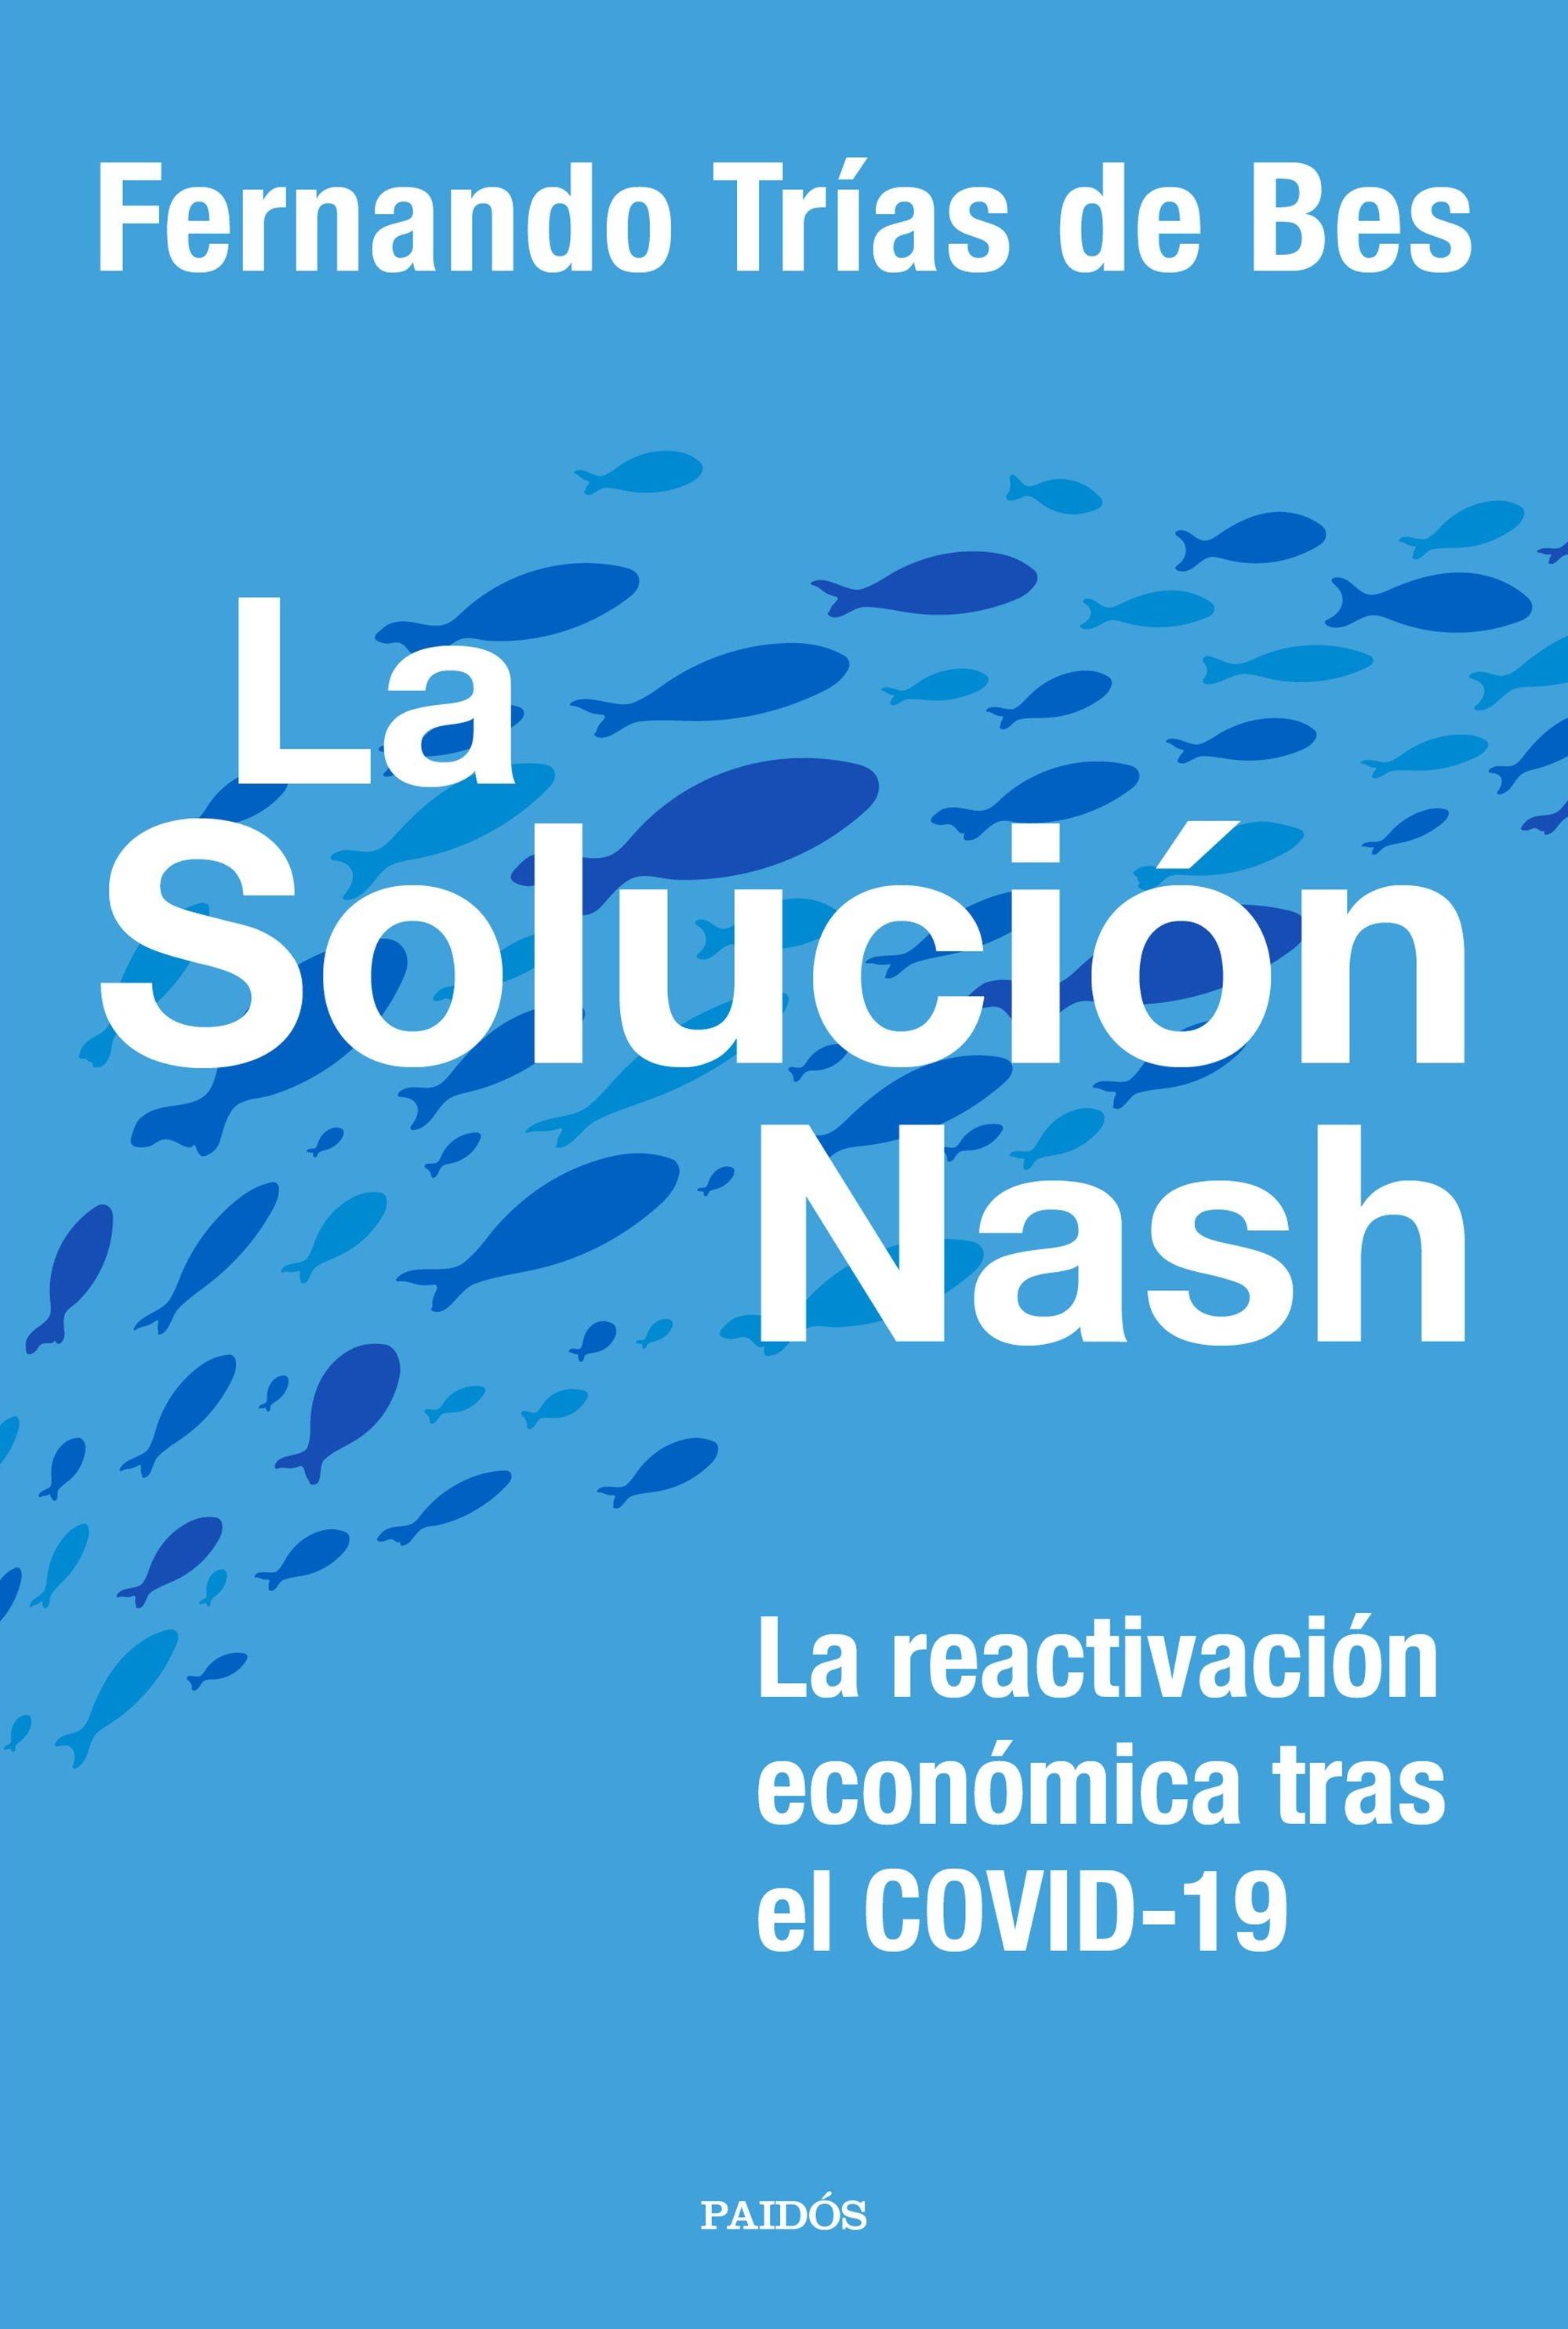 LA SOLUCIÓN NASH "La reactivación económica tras el COVID-19"